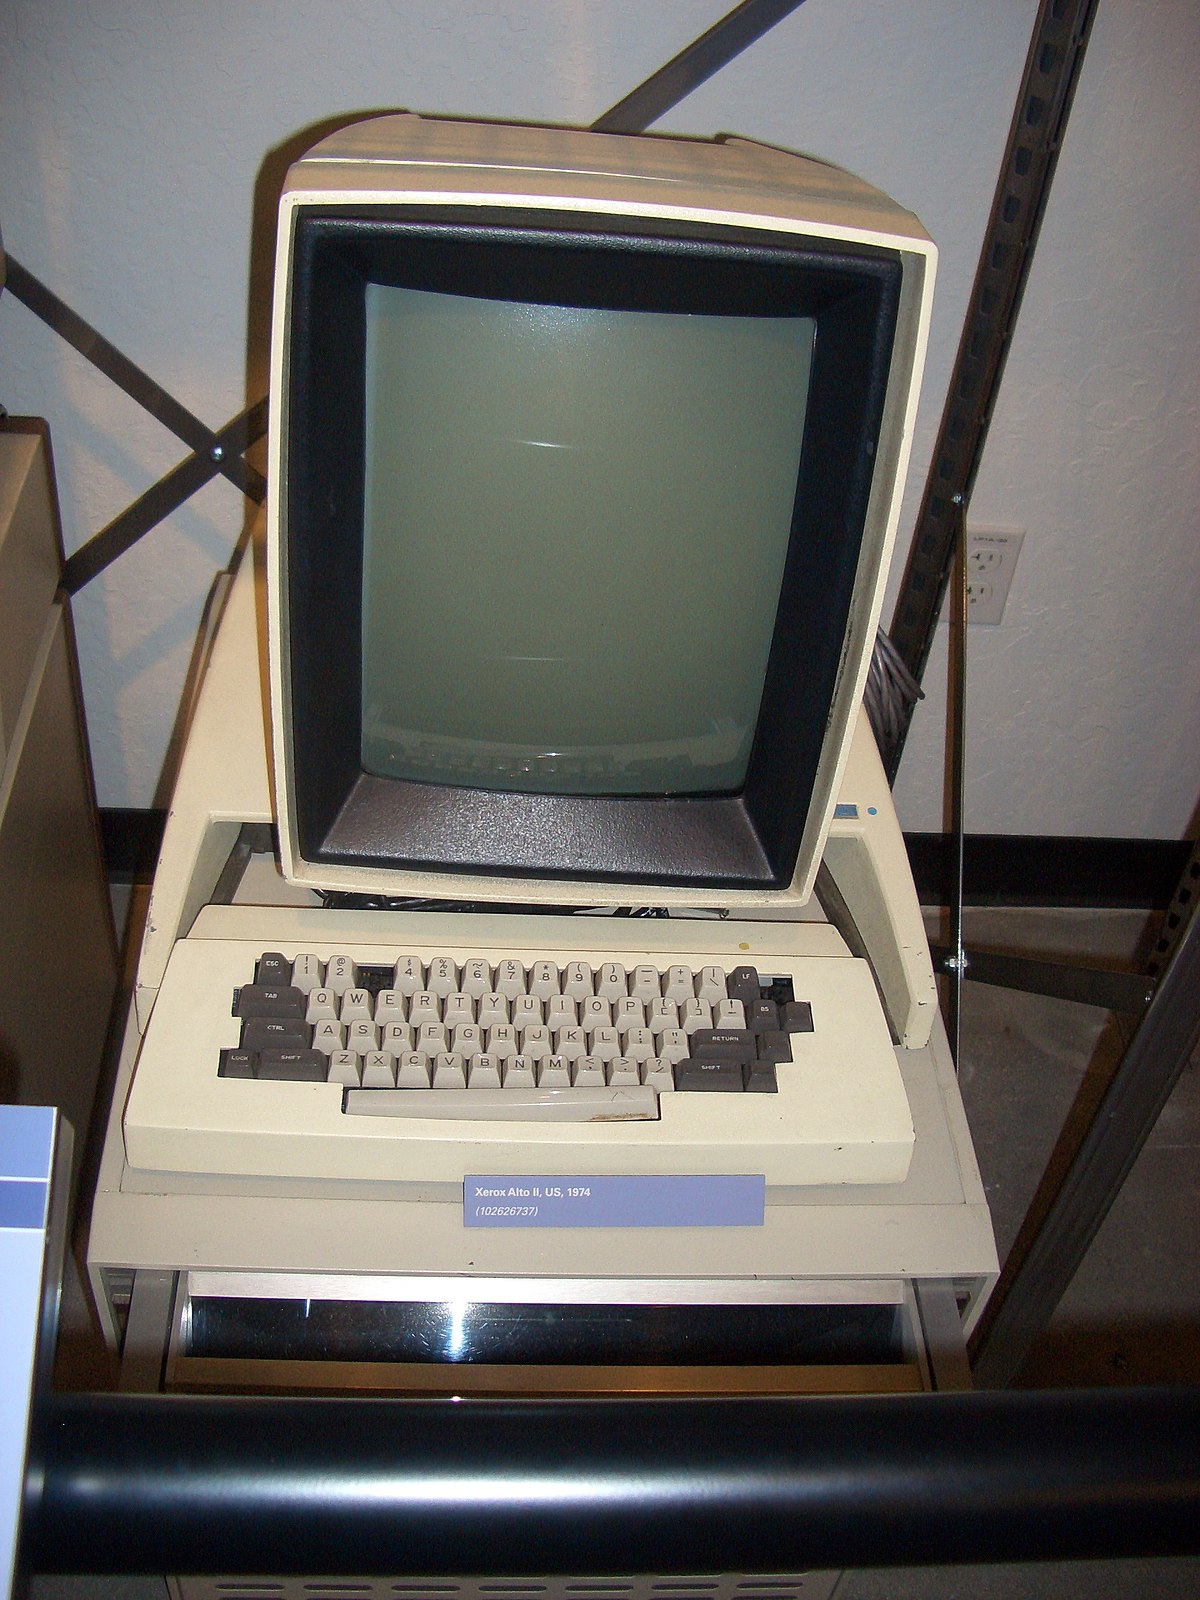 Xerox Alto - Wikipedia, la enciclopedia libre